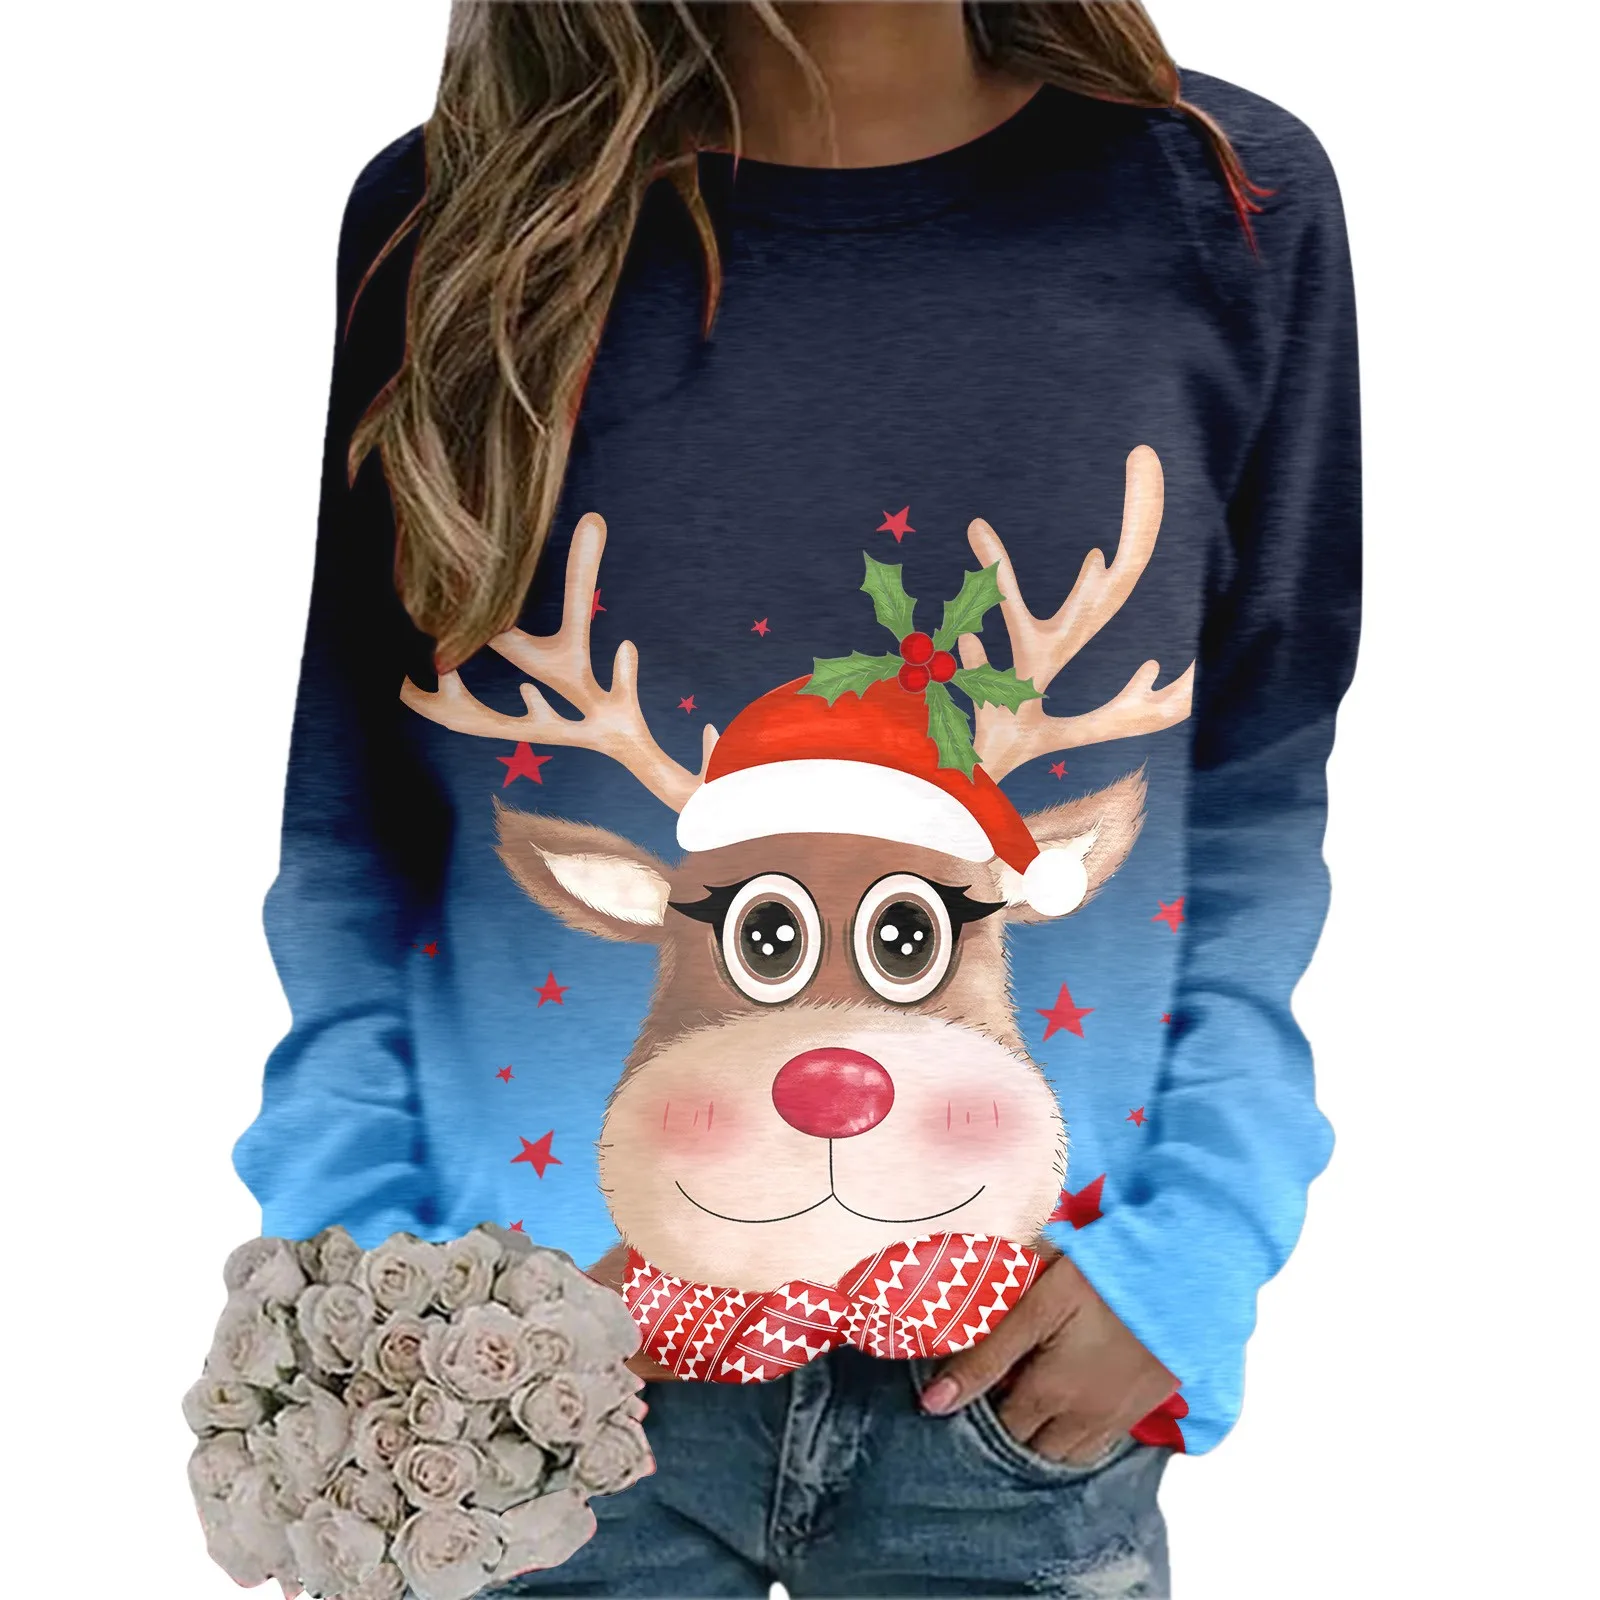 

Вязаная рубашка, Модный свитшот с надписью "Merry Christmas" для женщин, Забавный пуловер с рисунком рождественской елки и грузовика, Женский пуловер оверсайз на молнии